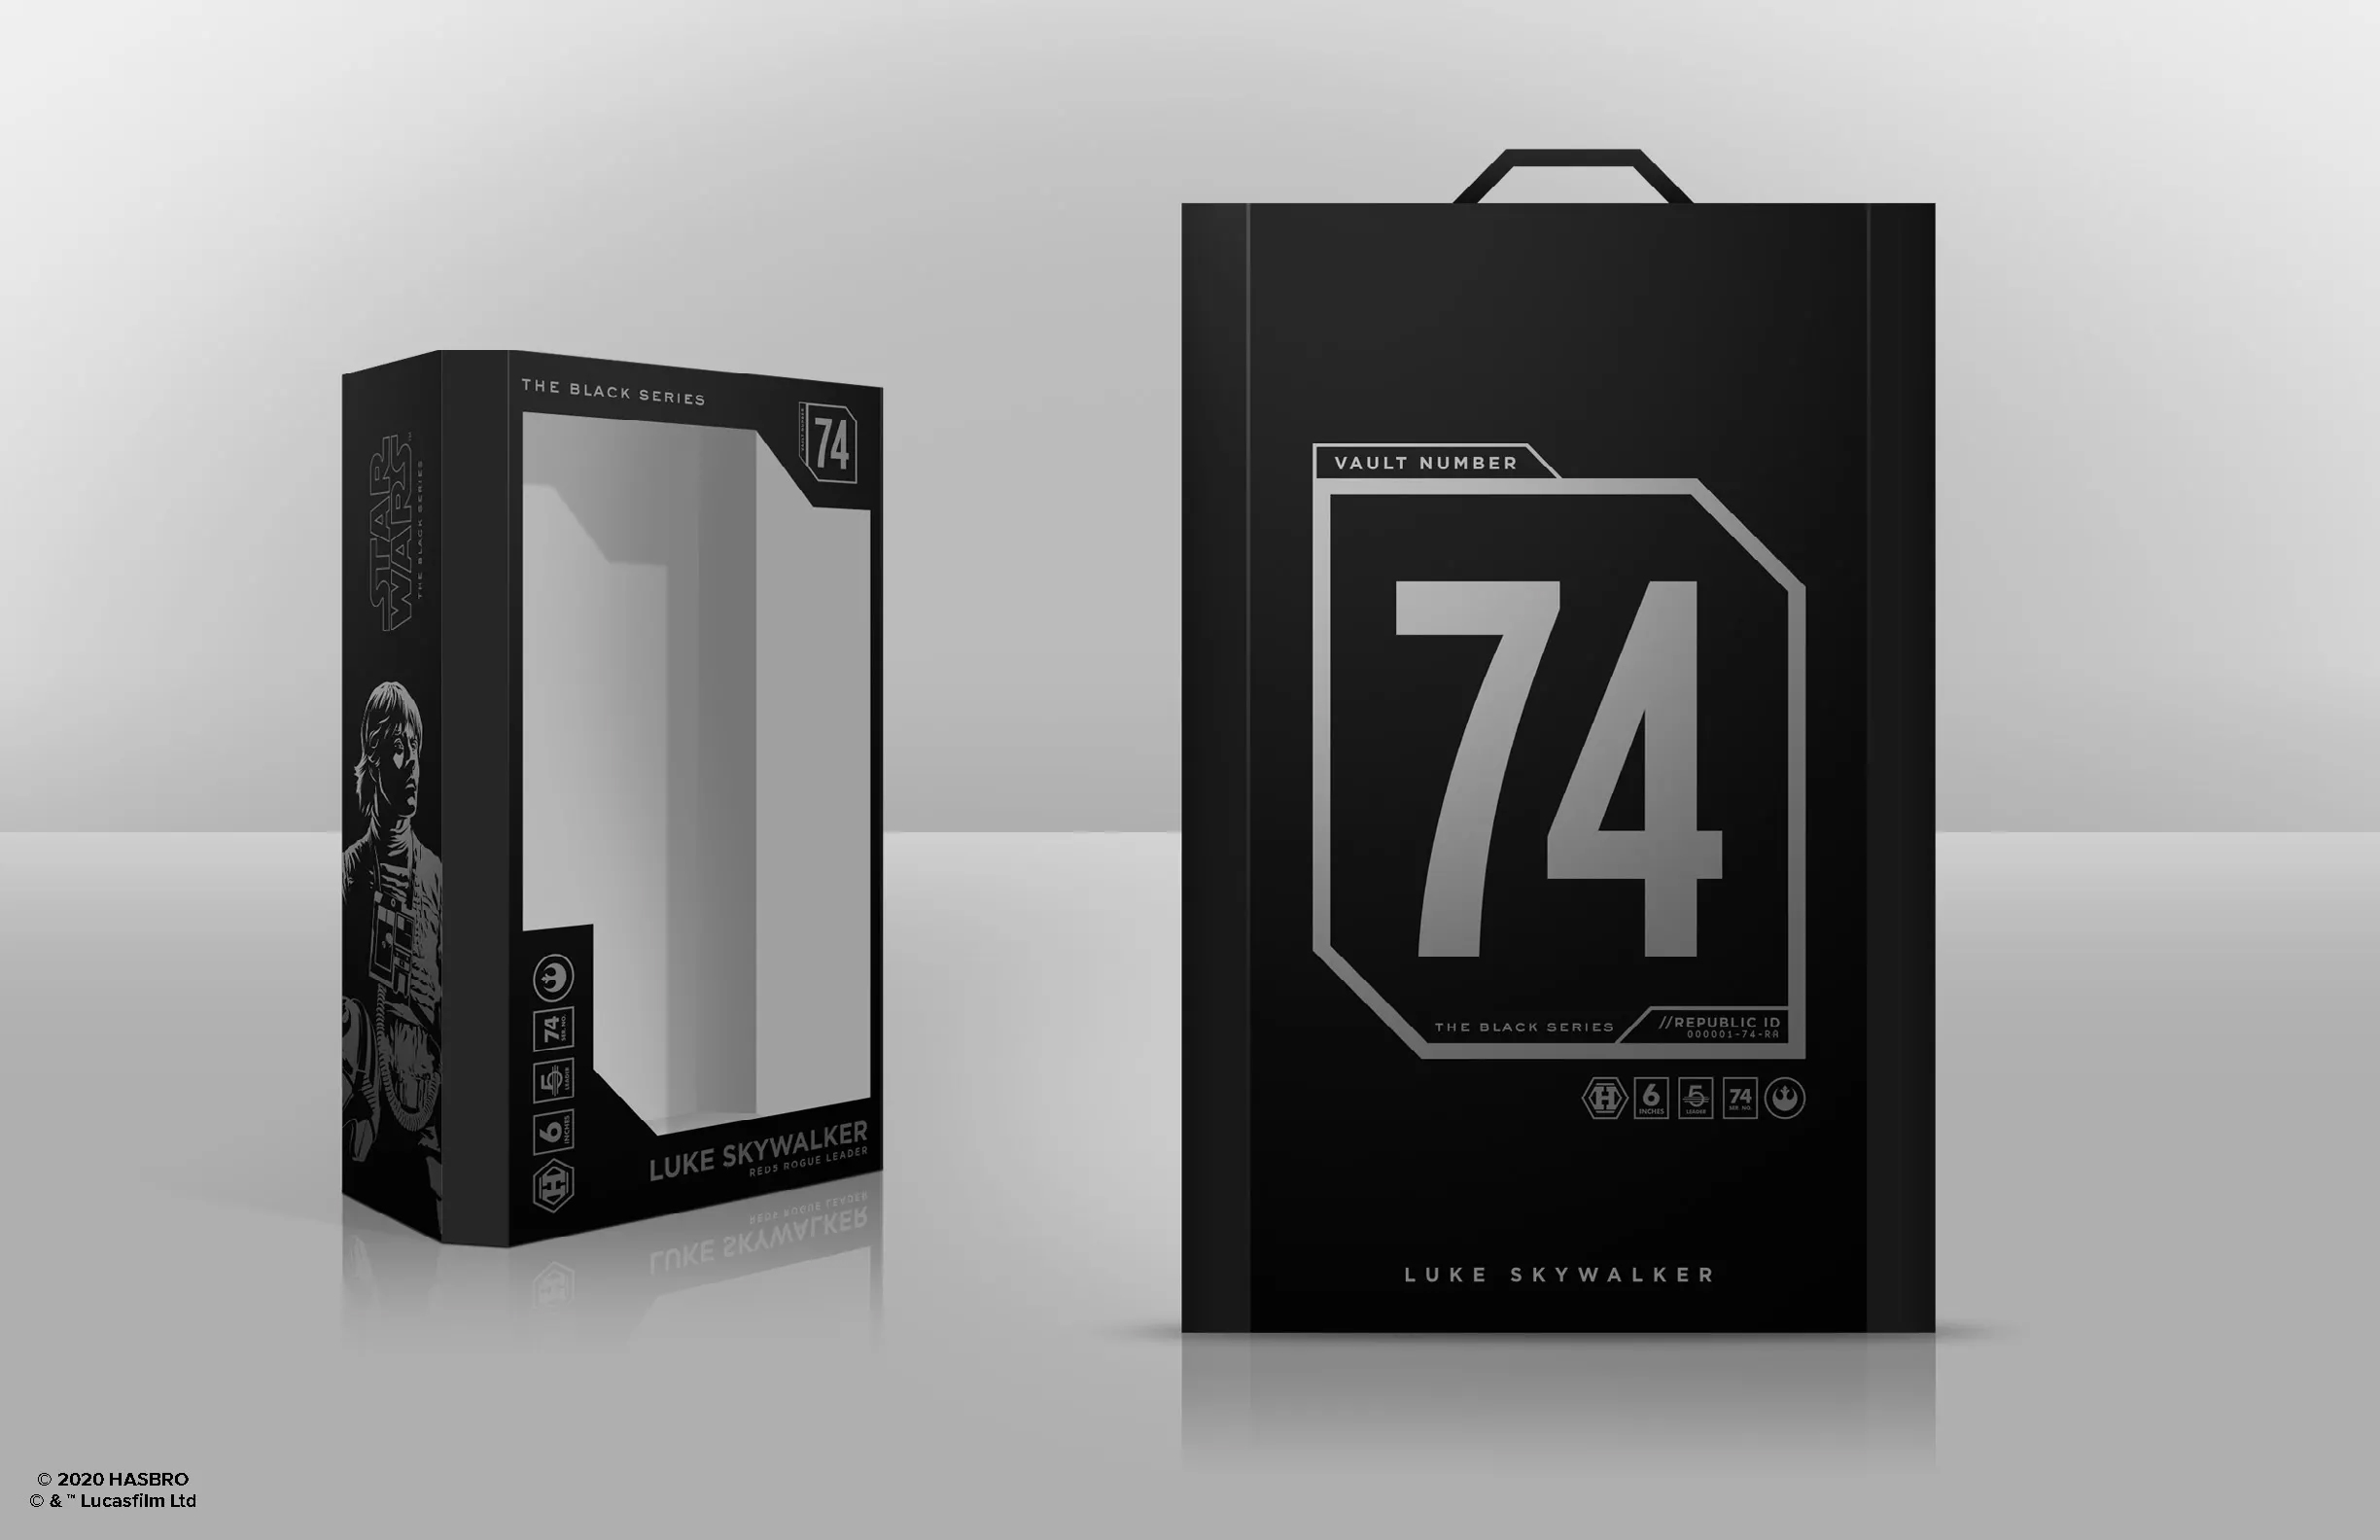 black series packaging